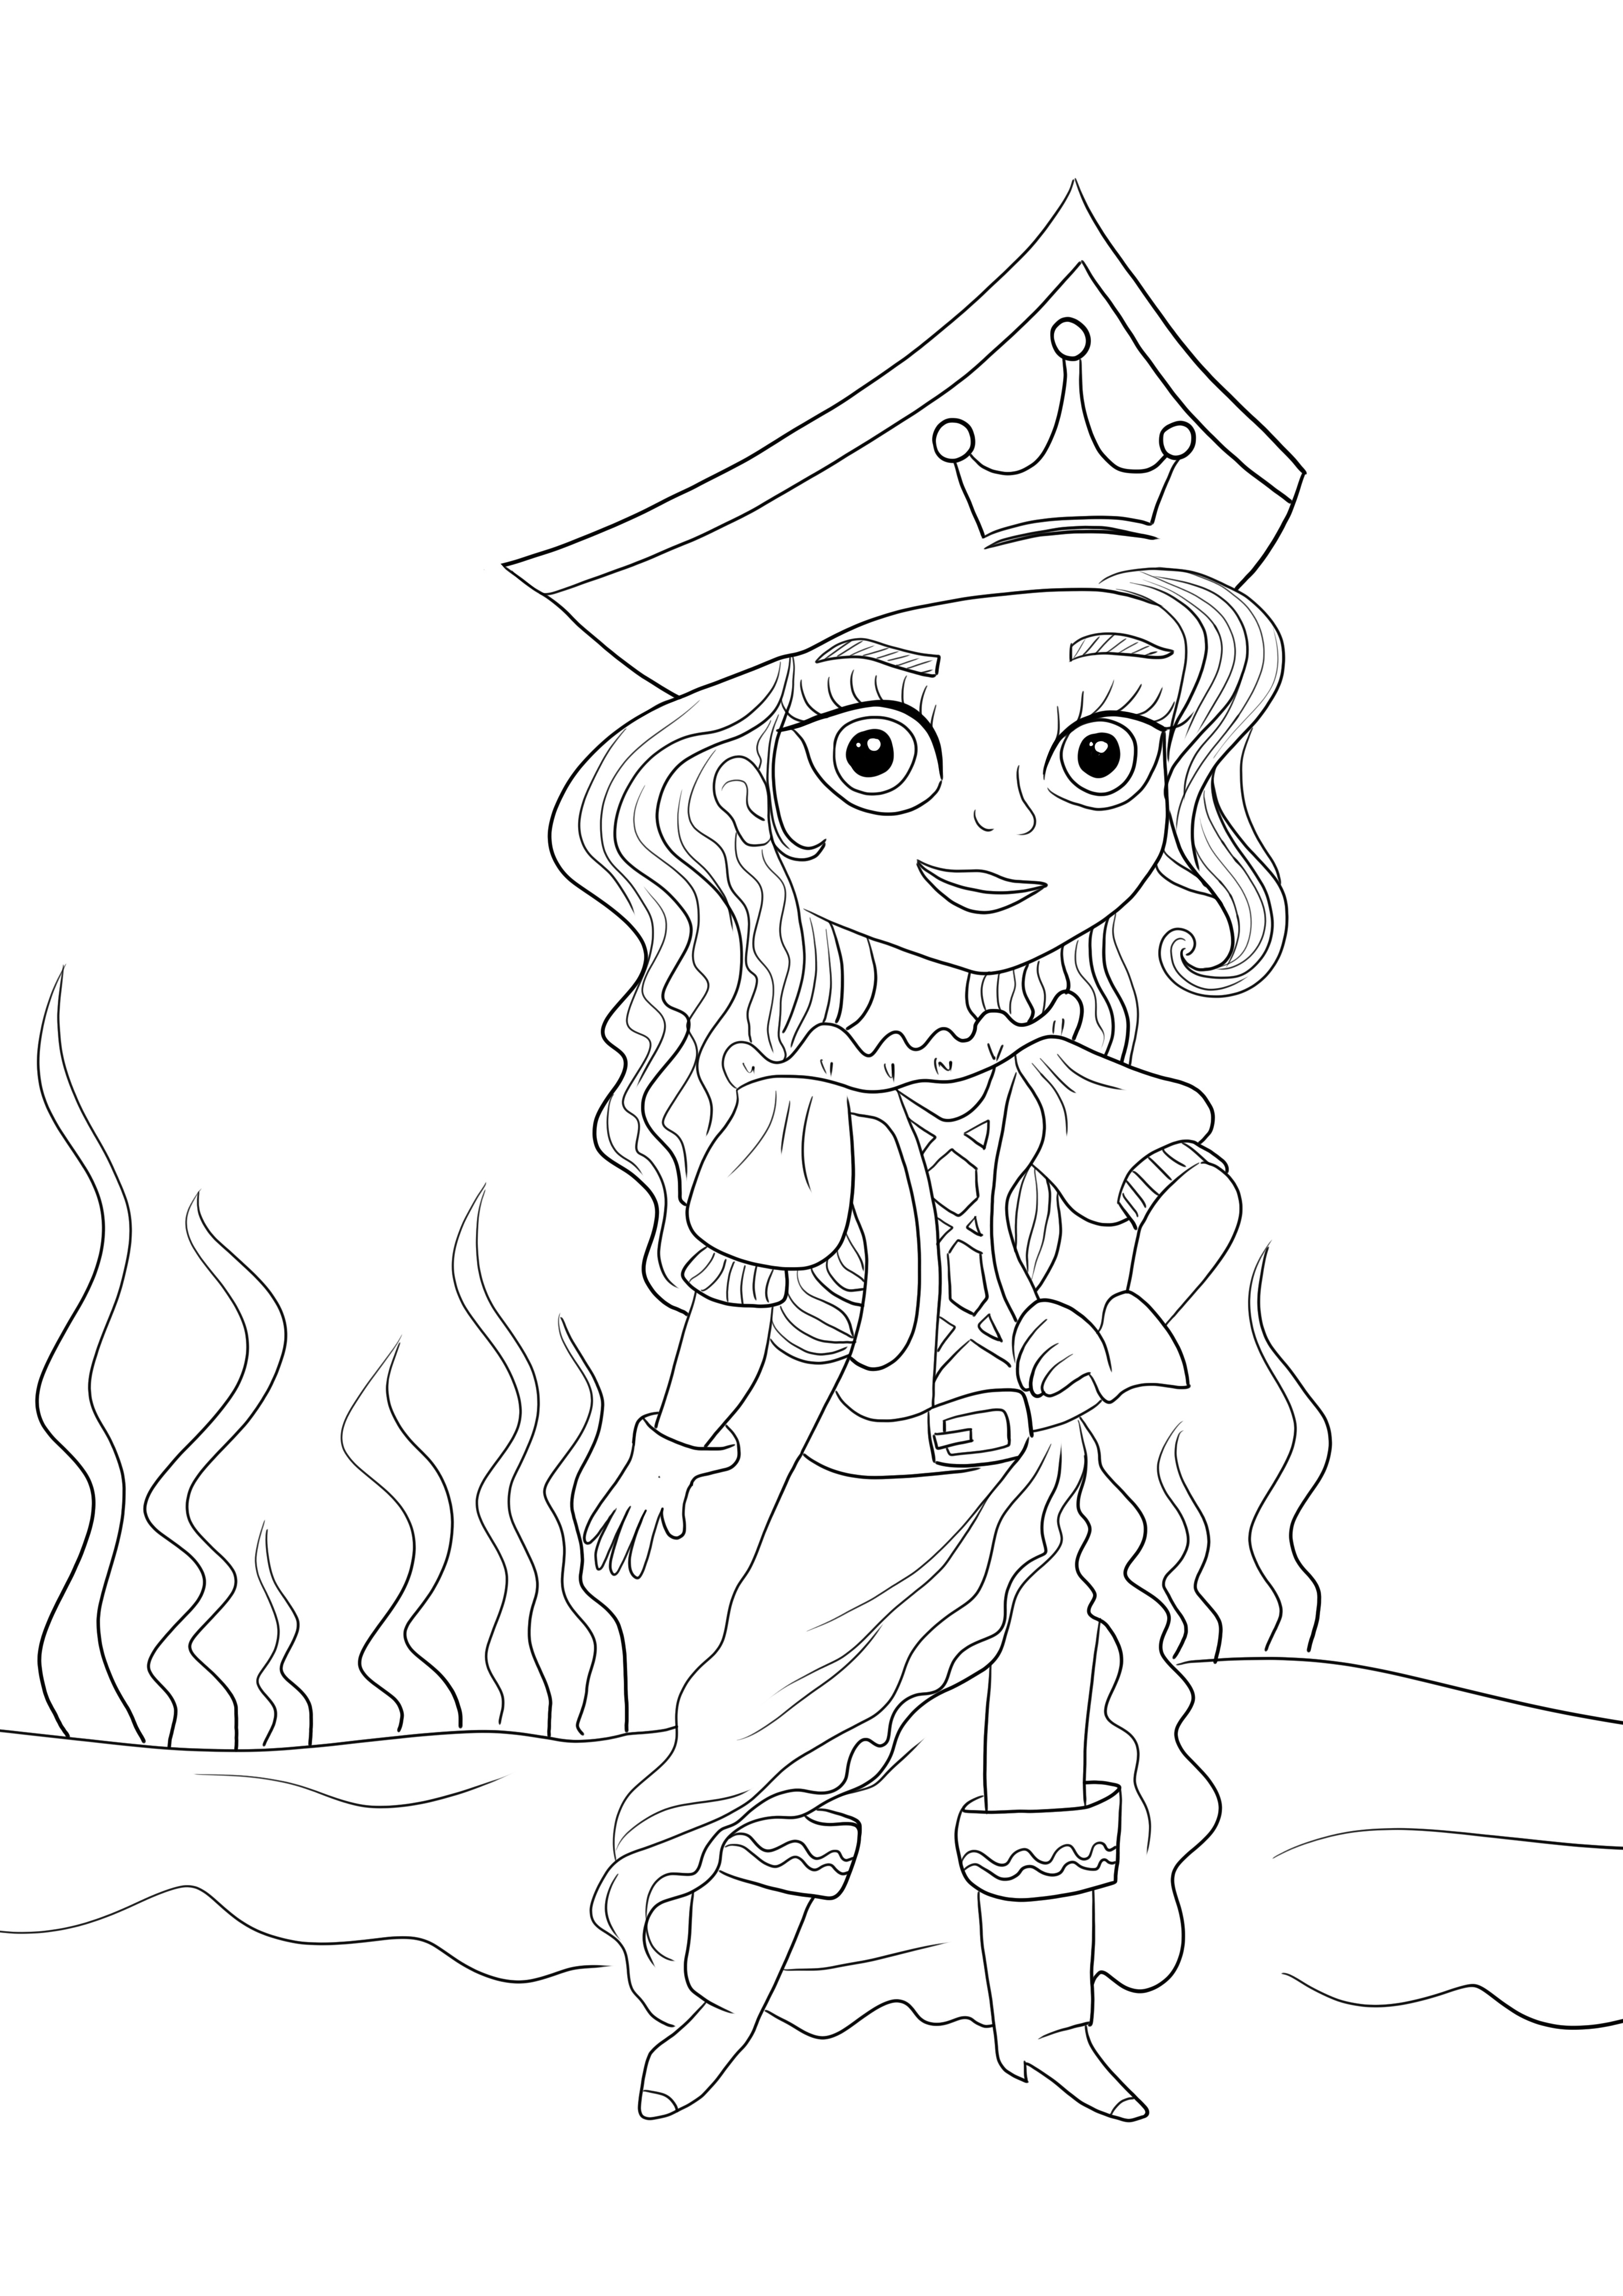 Pirate Princess tulostettava ja väritön